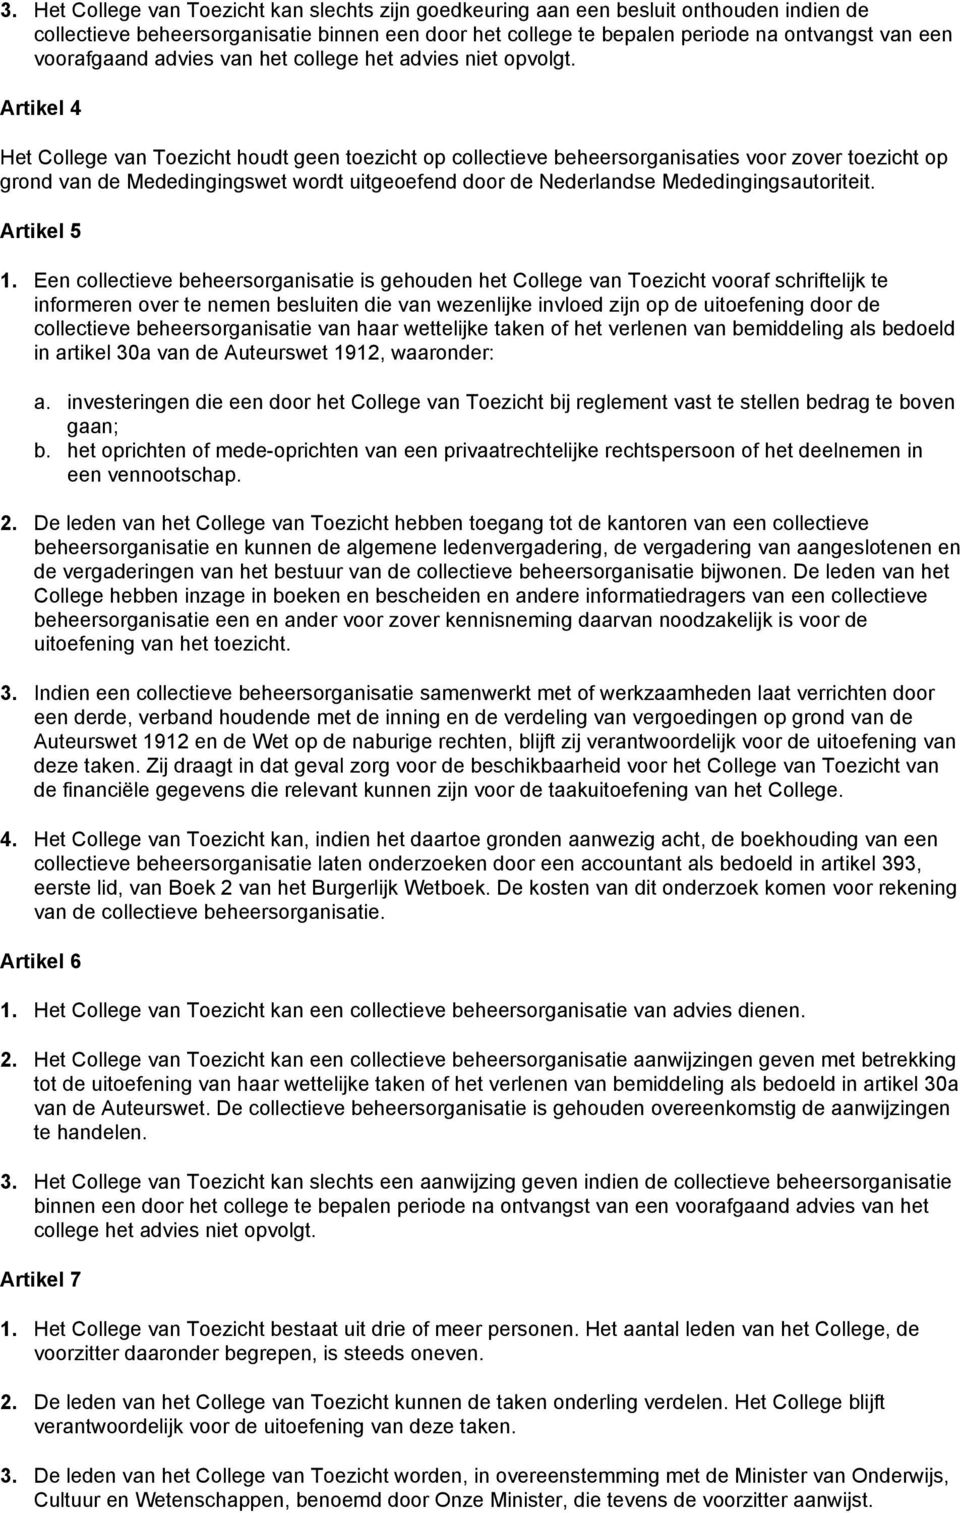 Artikel 4 Het College van Toezicht houdt geen toezicht op collectieve beheersorganisaties voor zover toezicht op grond van de Mededingingswet wordt uitgeoefend door de Nederlandse